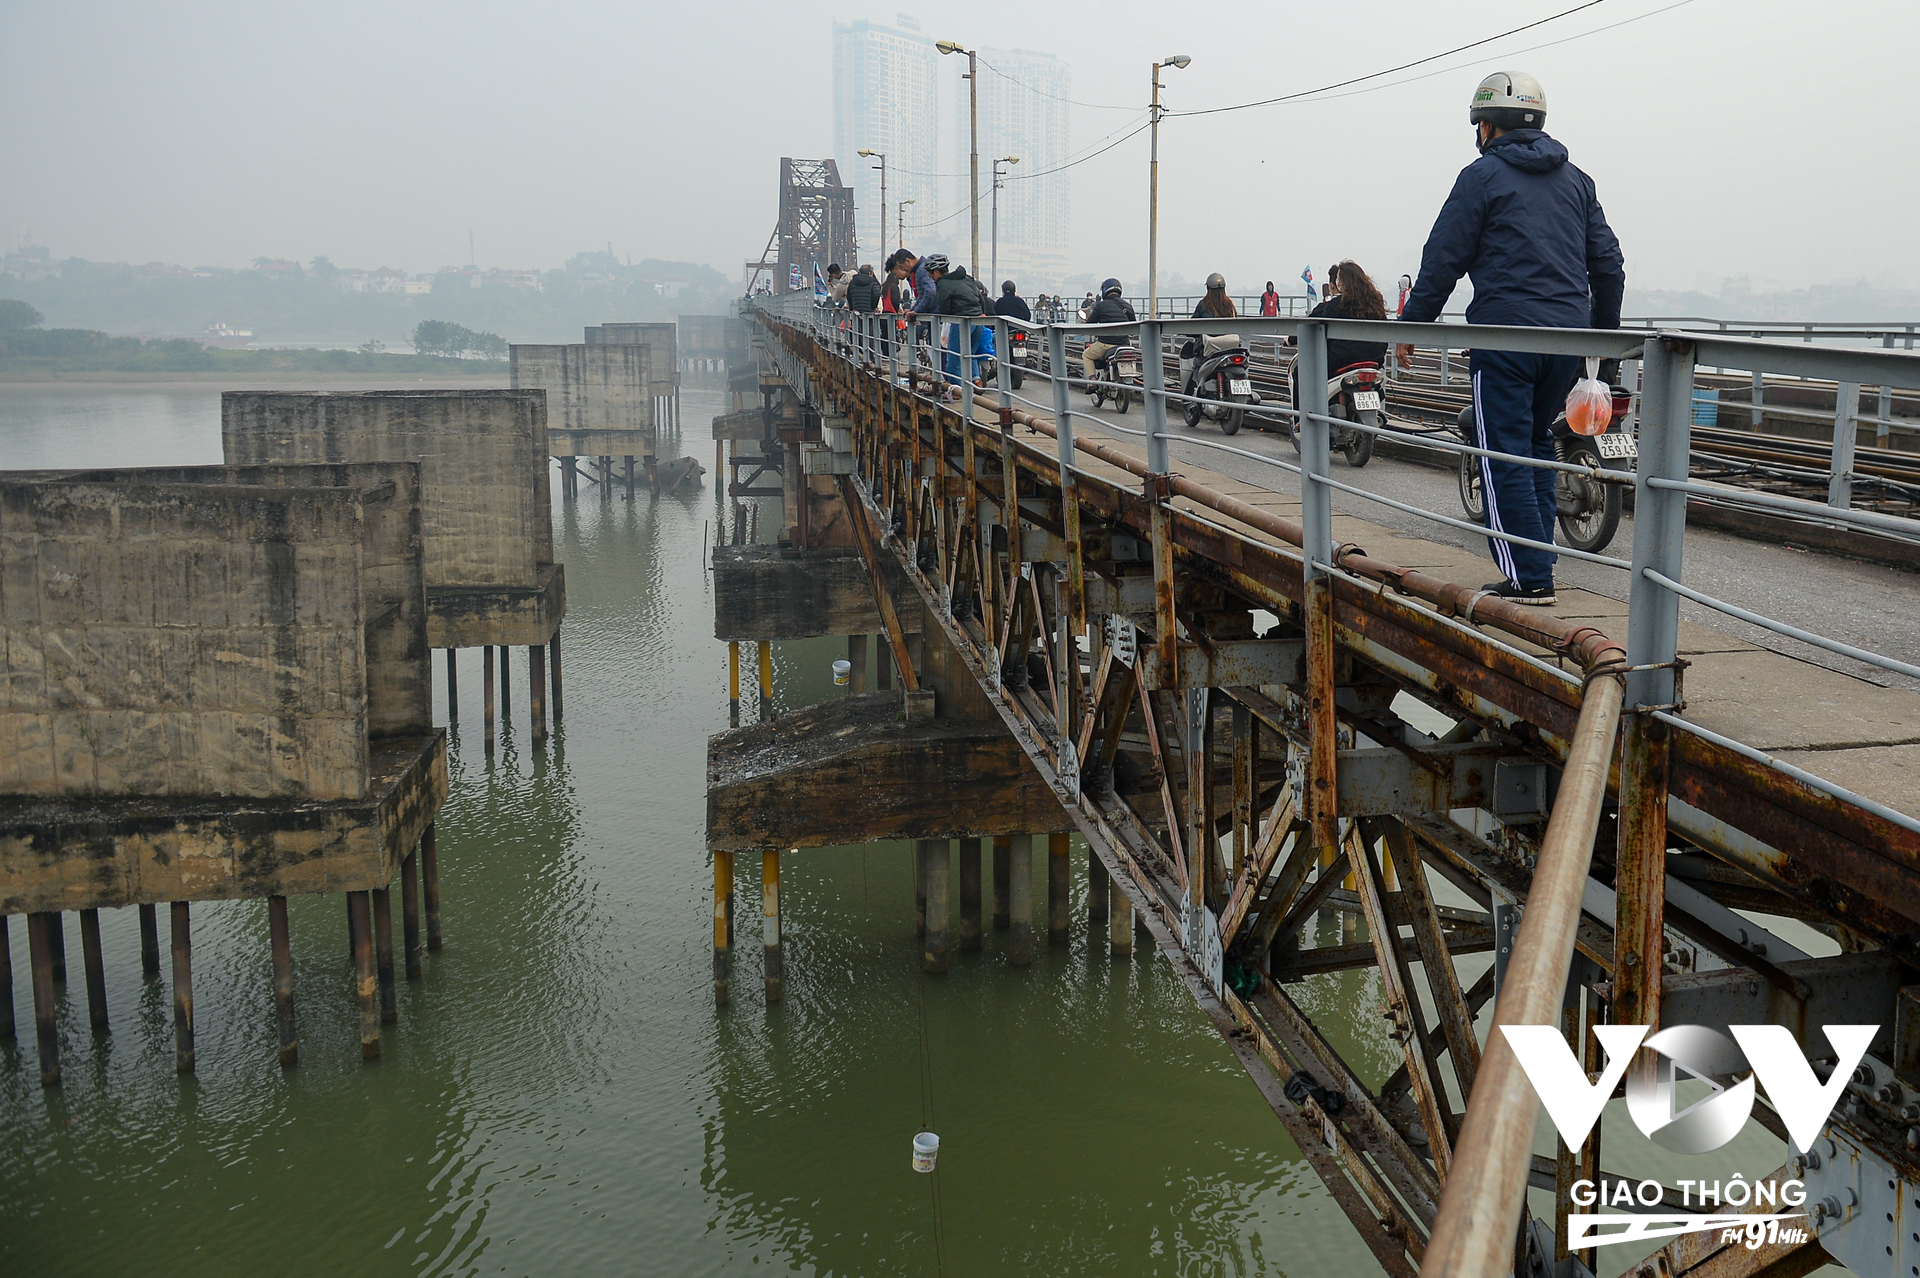 Ghi nhận tại cầu Long Biên (Hà Nội), cũng giống như năm trước, năm nay vẫn có nhóm tình nguyện Đường Táo Quân hỗ trợ người dân thả cá (Ảnh: Phúc Tài)